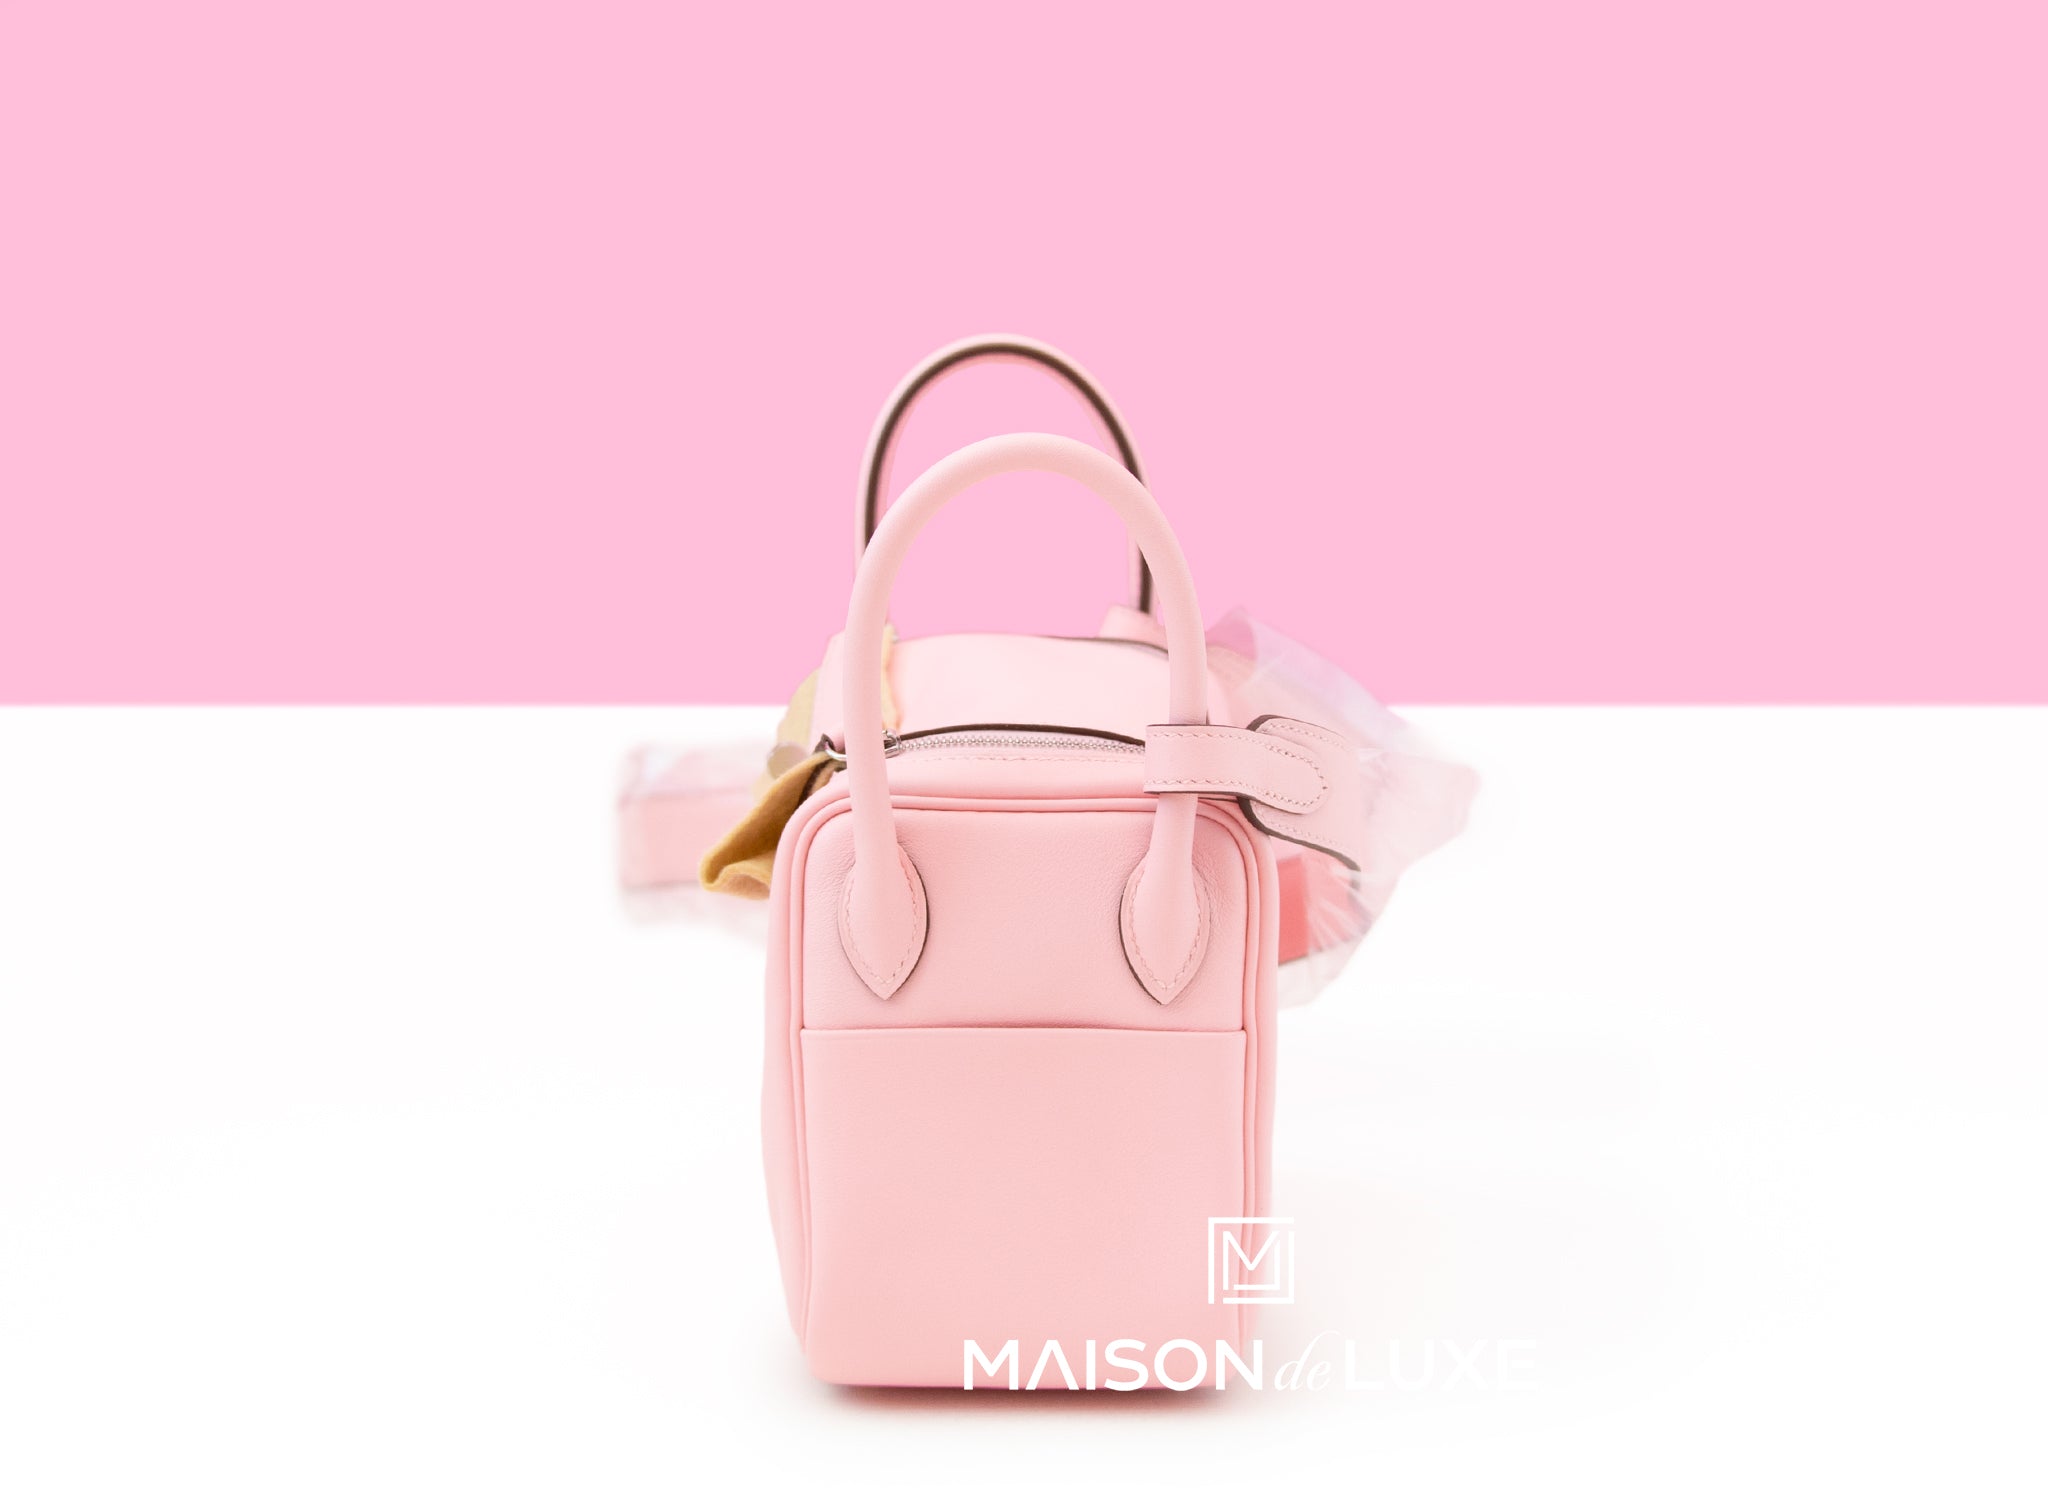 Hermes Mini Kelly I Bag 3Q Pink Sakura Swift GHW